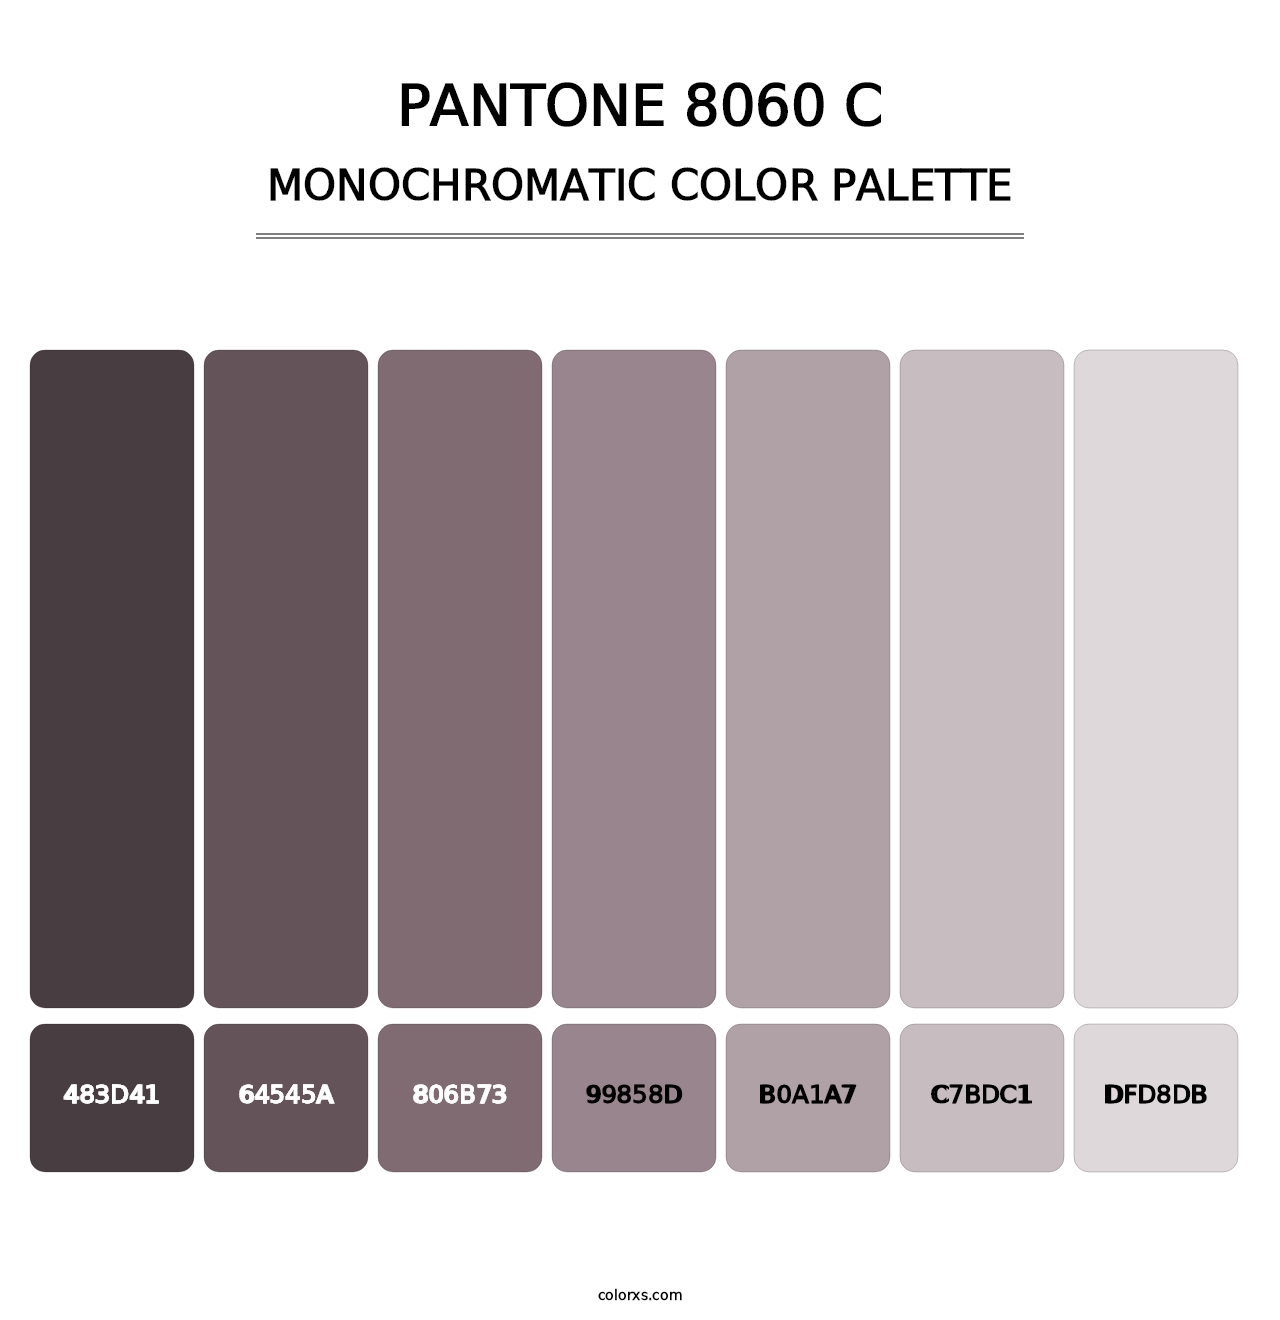 PANTONE 8060 C - Monochromatic Color Palette